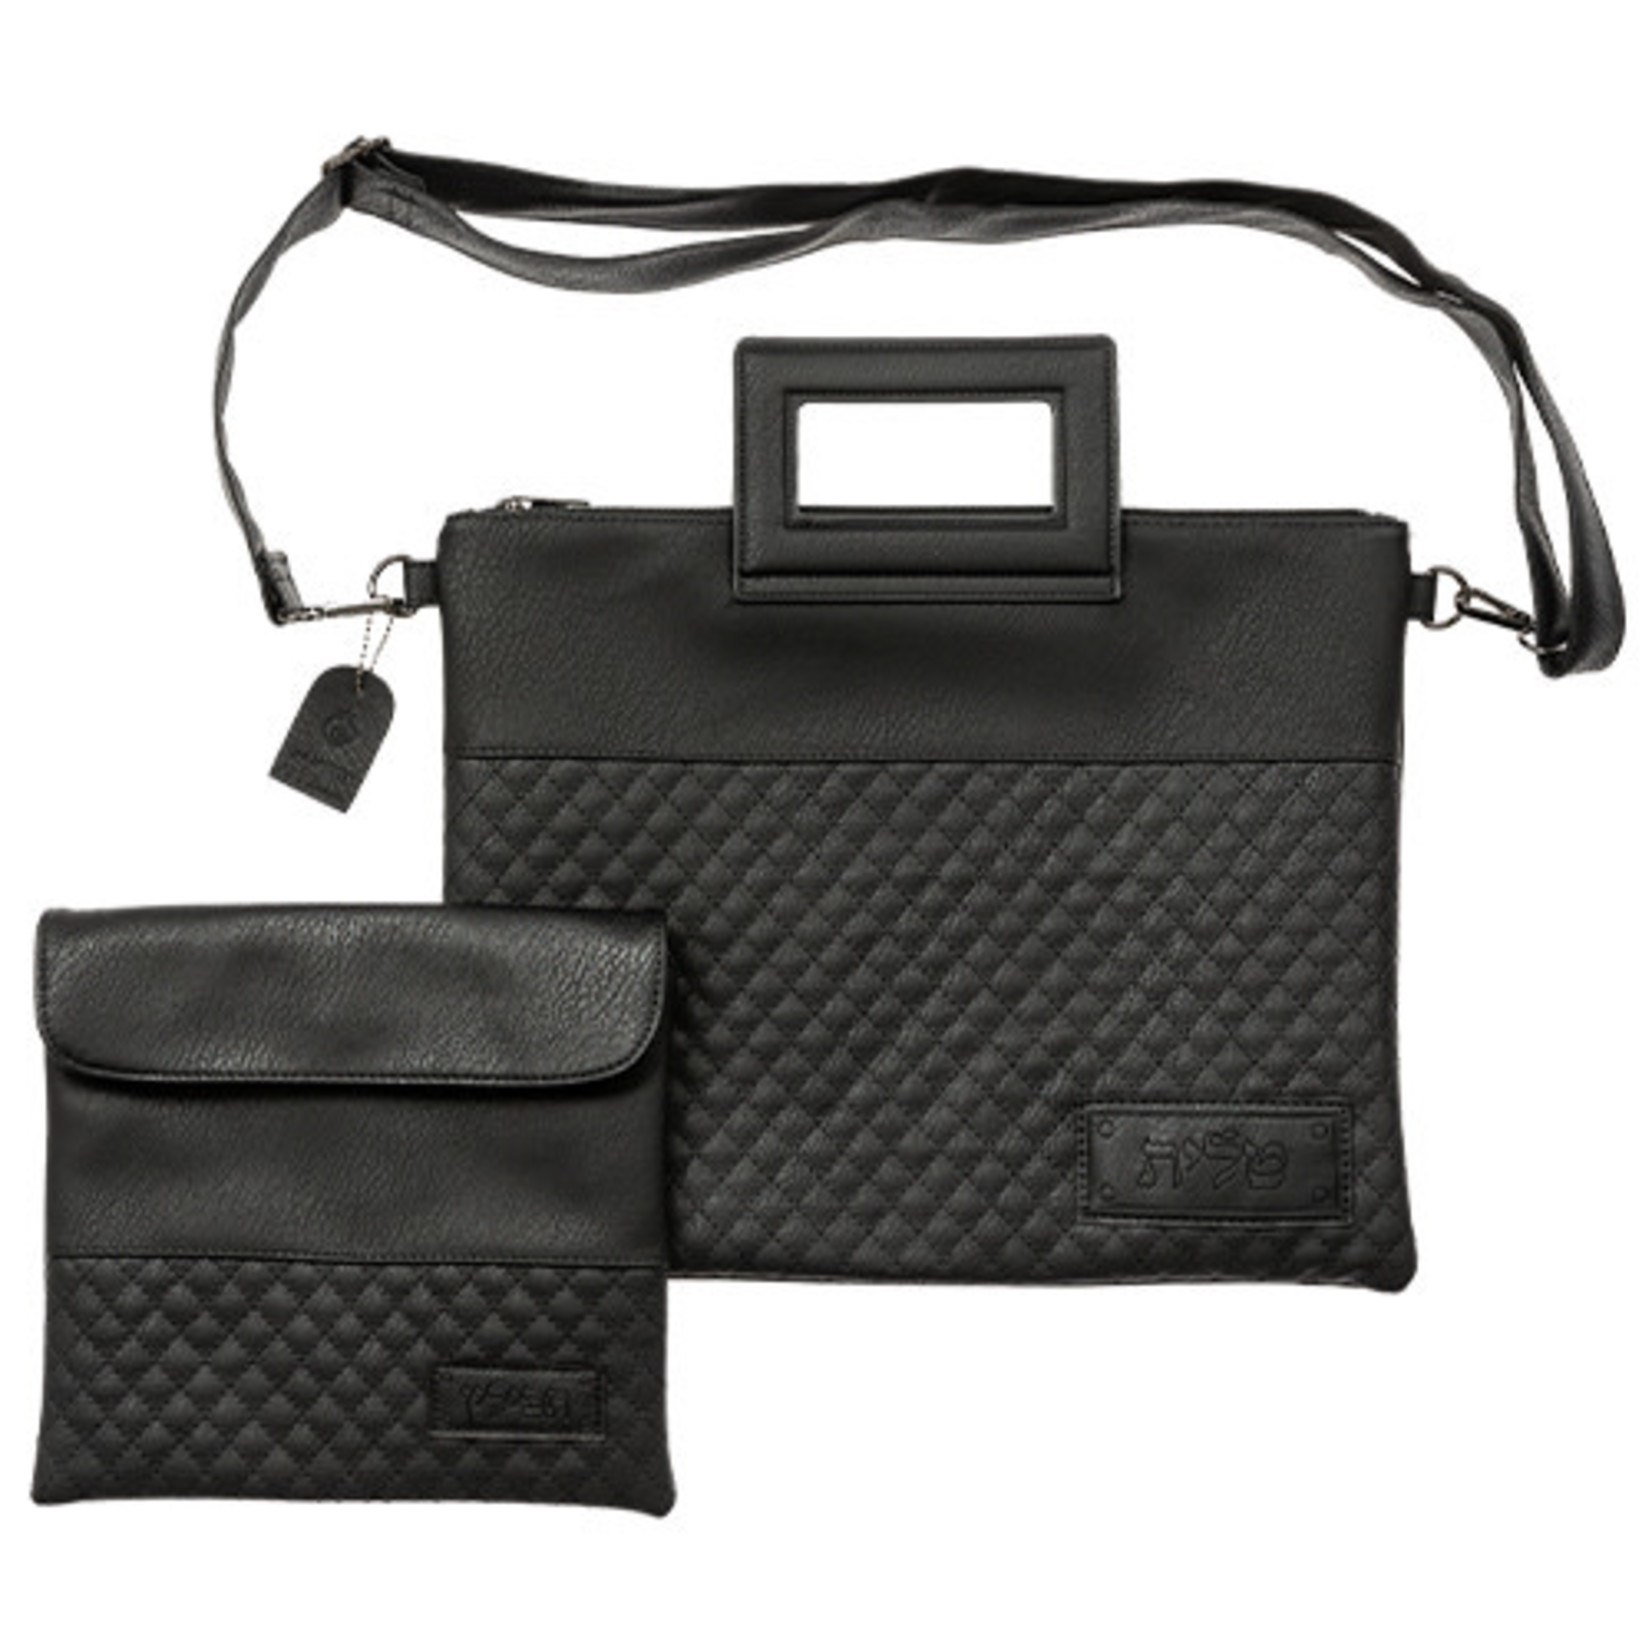 Leatherette Tallit and Tefillin Bag Set